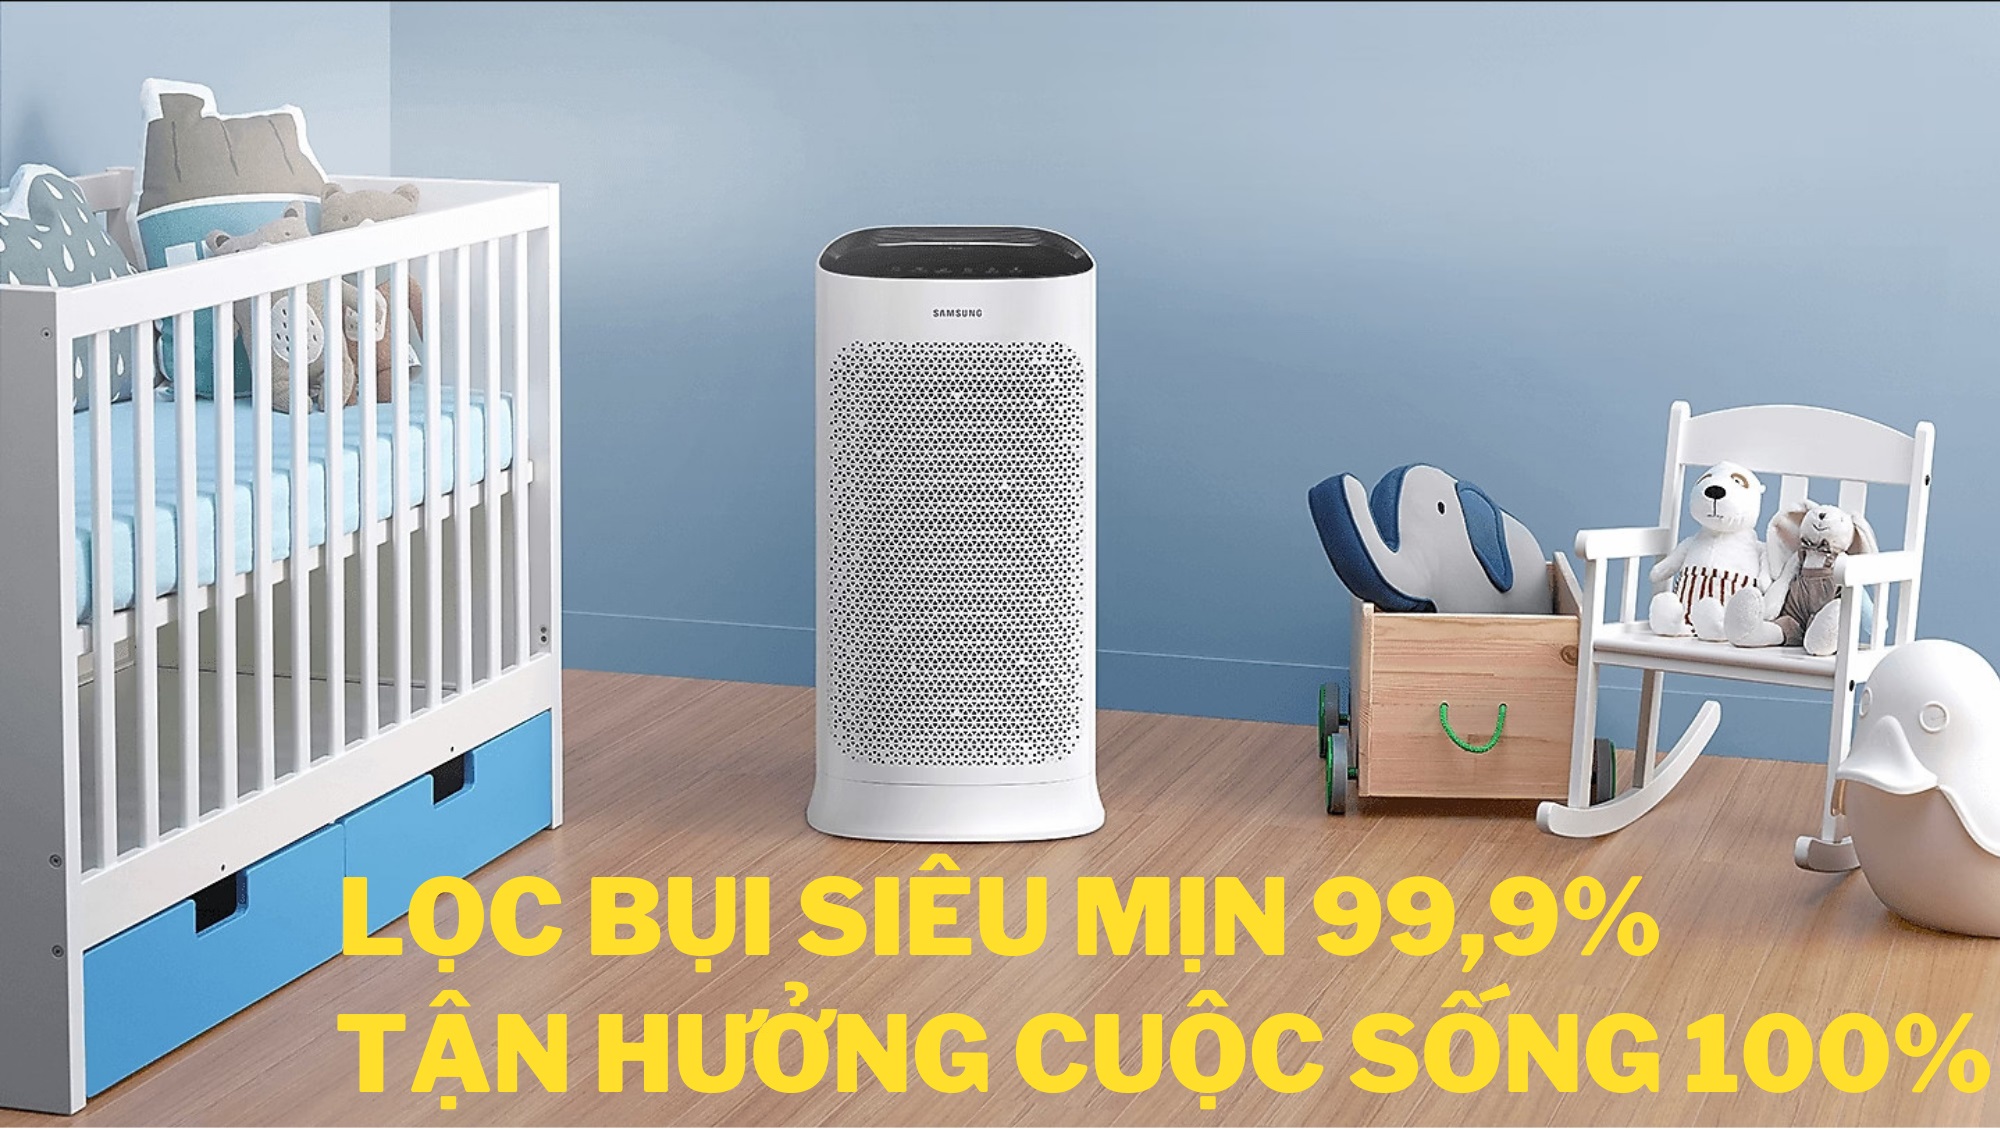 Bảo vệ gia đình với Máy lọc không khí Samsung